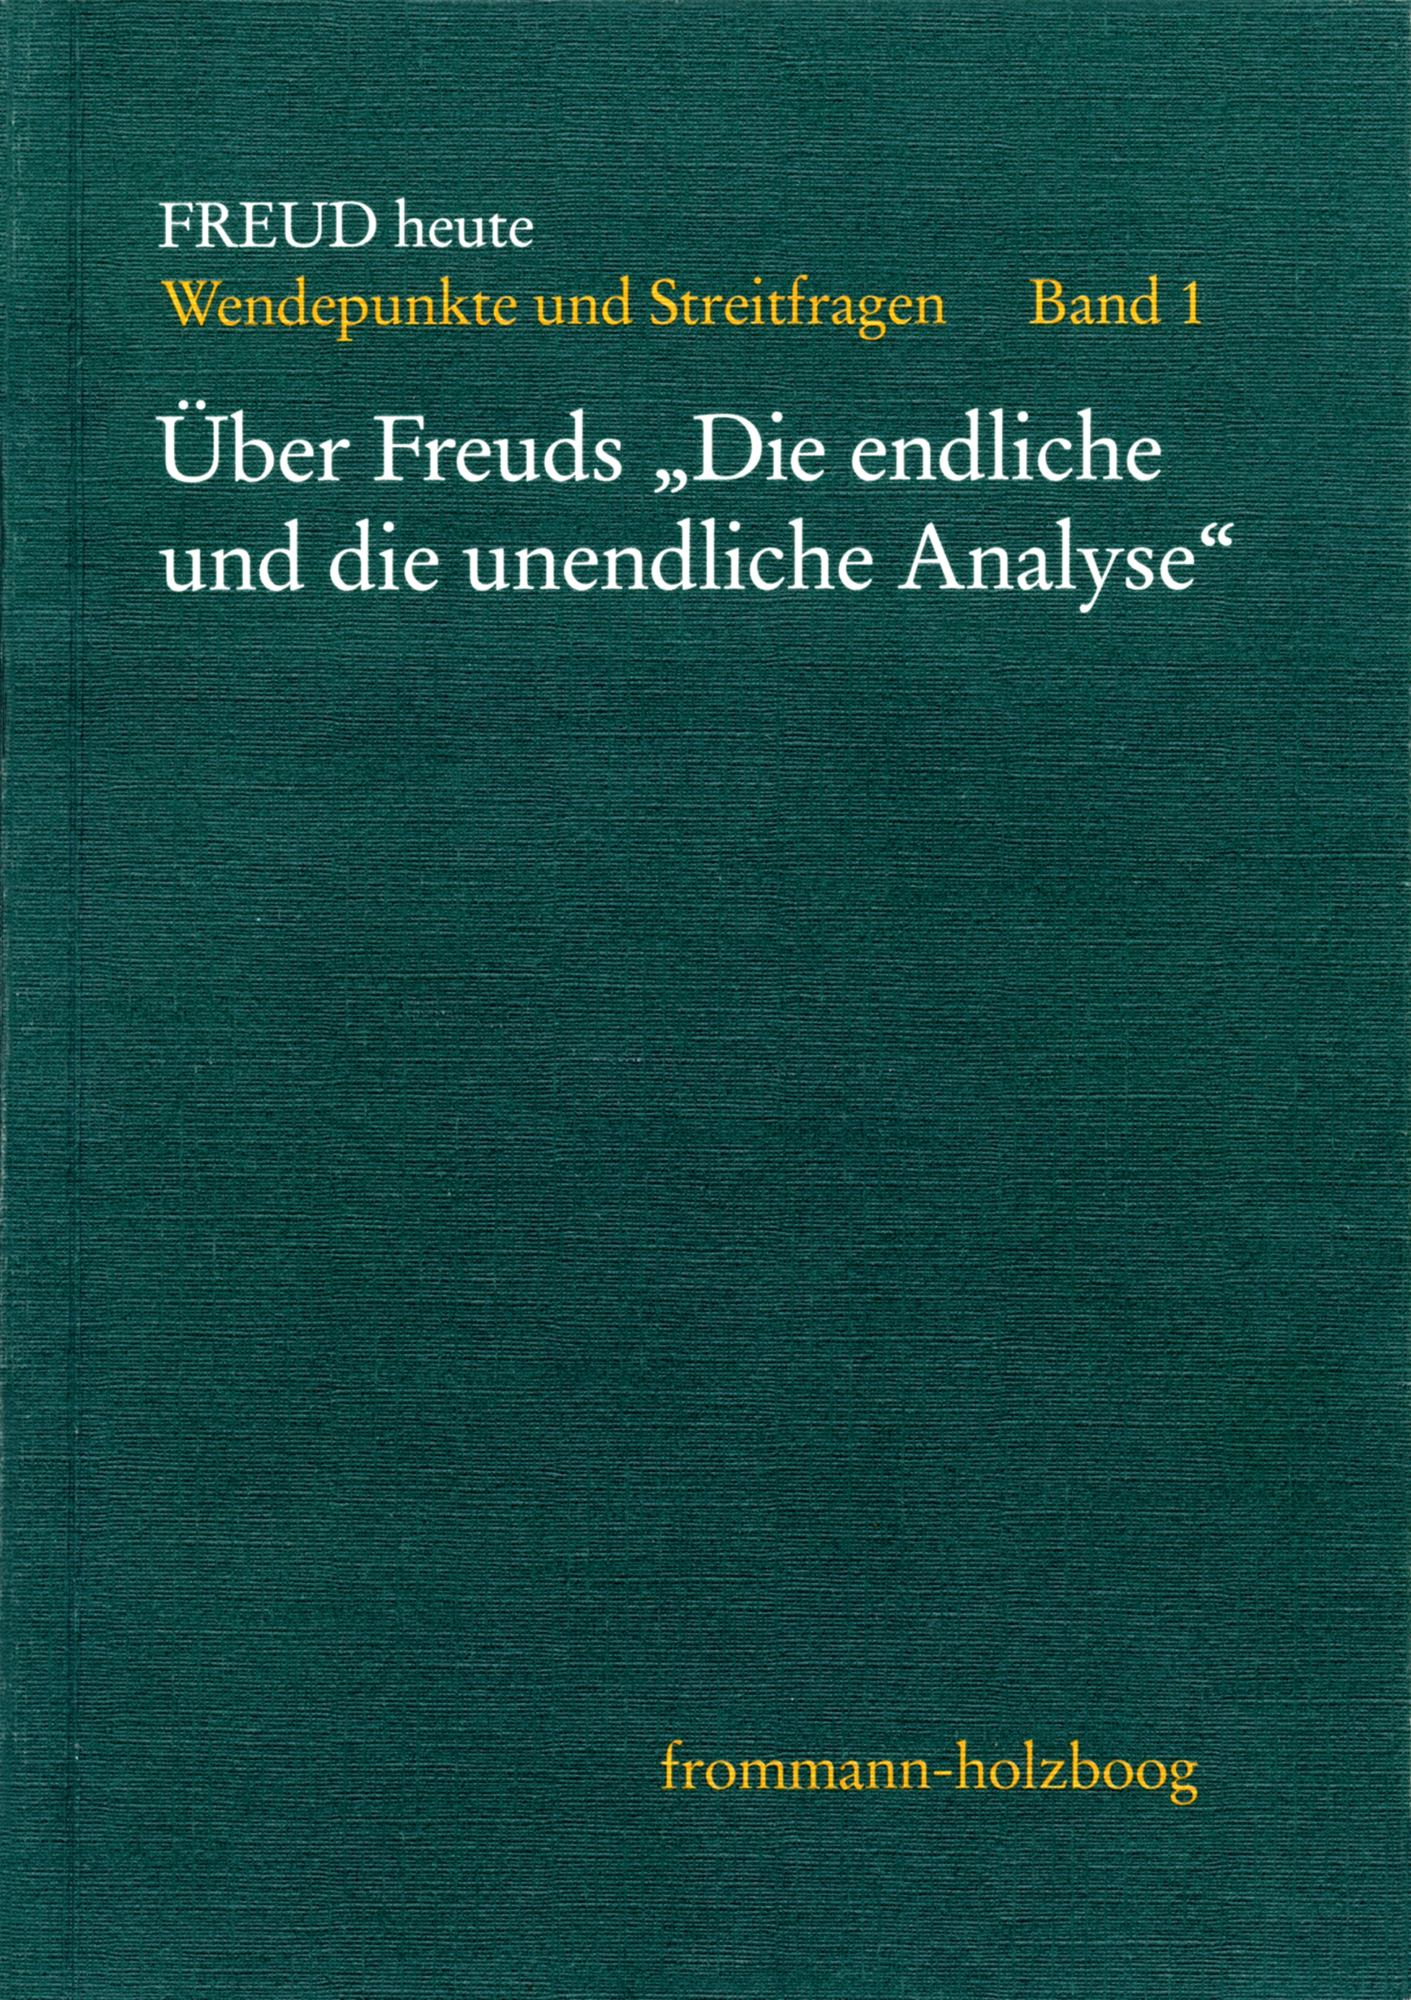 Freud heute. Wendepunkte und Streitfragen - Bd. 1: ›Über Freuds ´Die endliche und unendliche Analyse`‹ 